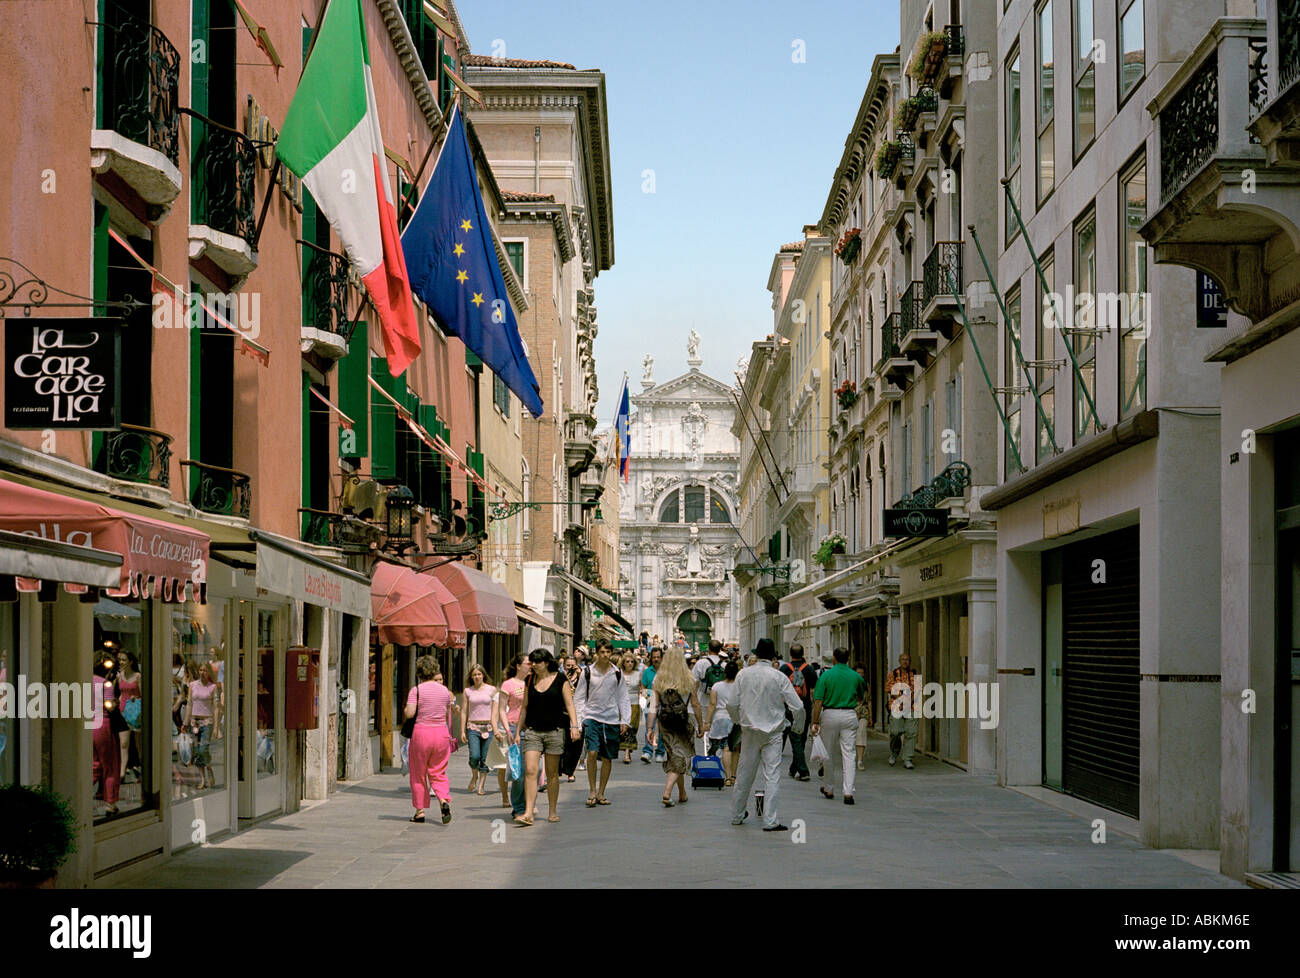 Calle Larga XXII Marzo è scomodo il nome di una strada a Venezia il più noto per le sue eleganti boutiques di designer Foto Stock